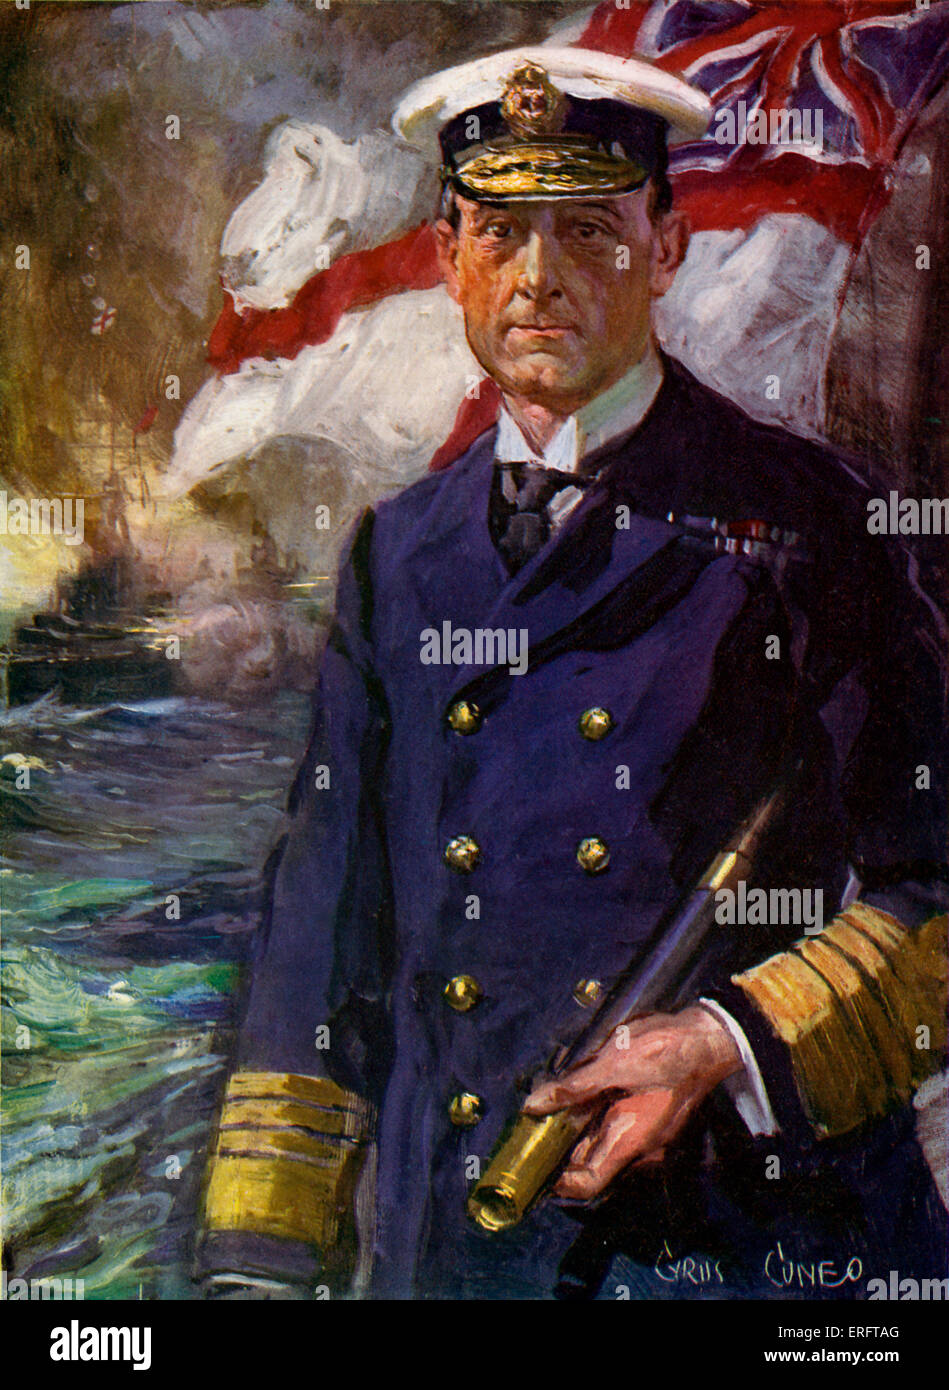 L'amiral Sir John Jellicoe - . L'amiral de la Marine royale britannique, l'amiral de la flotte au cours de la Première Guerre Mondial 5 Décembre 1859 - 20 novembre 1935. Cuneo Cyrus (artiste) Banque D'Images